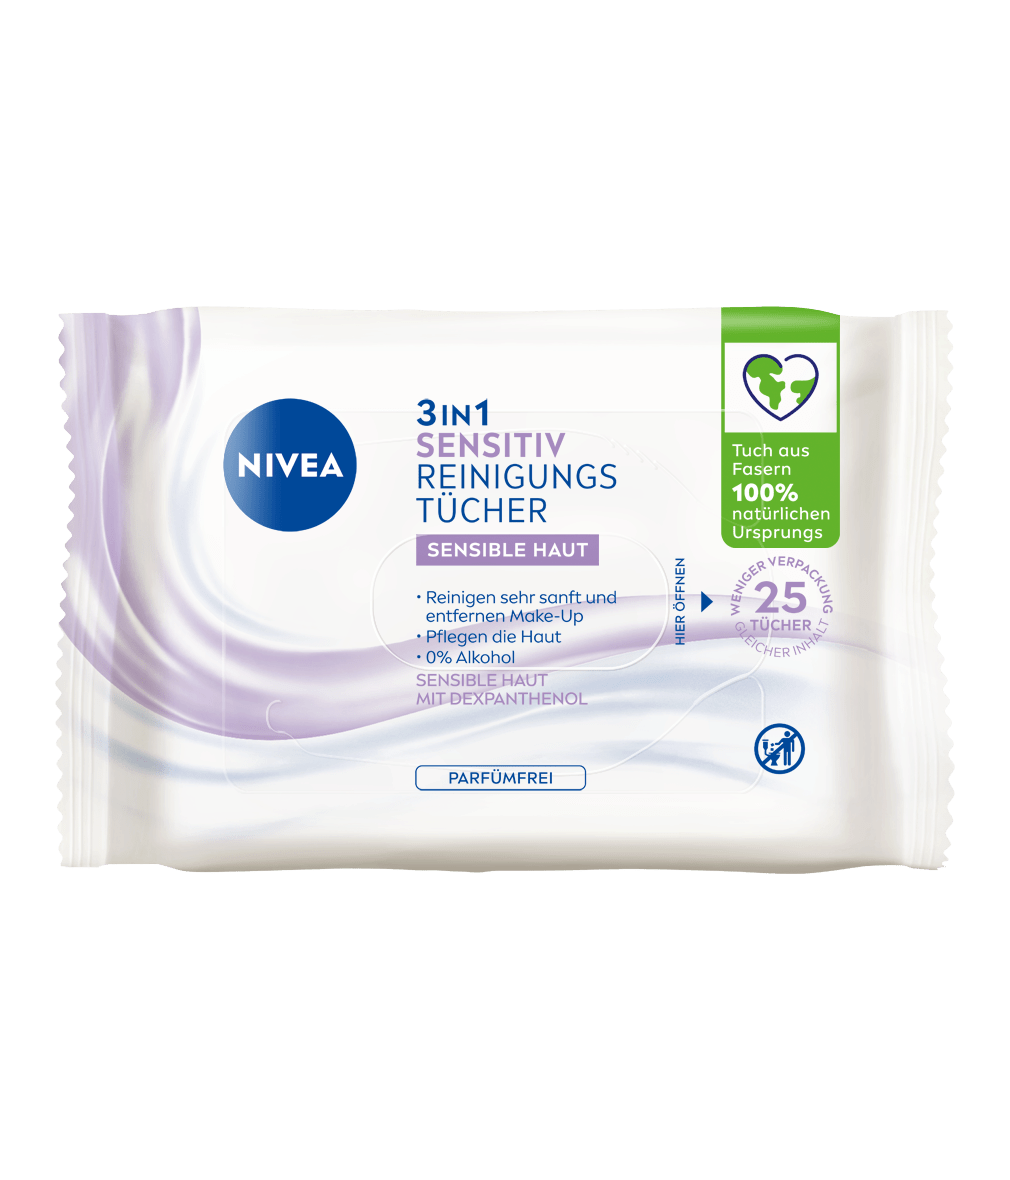 NIVEA 3in1 Sensitiv Reinigungstücher 25 Stück